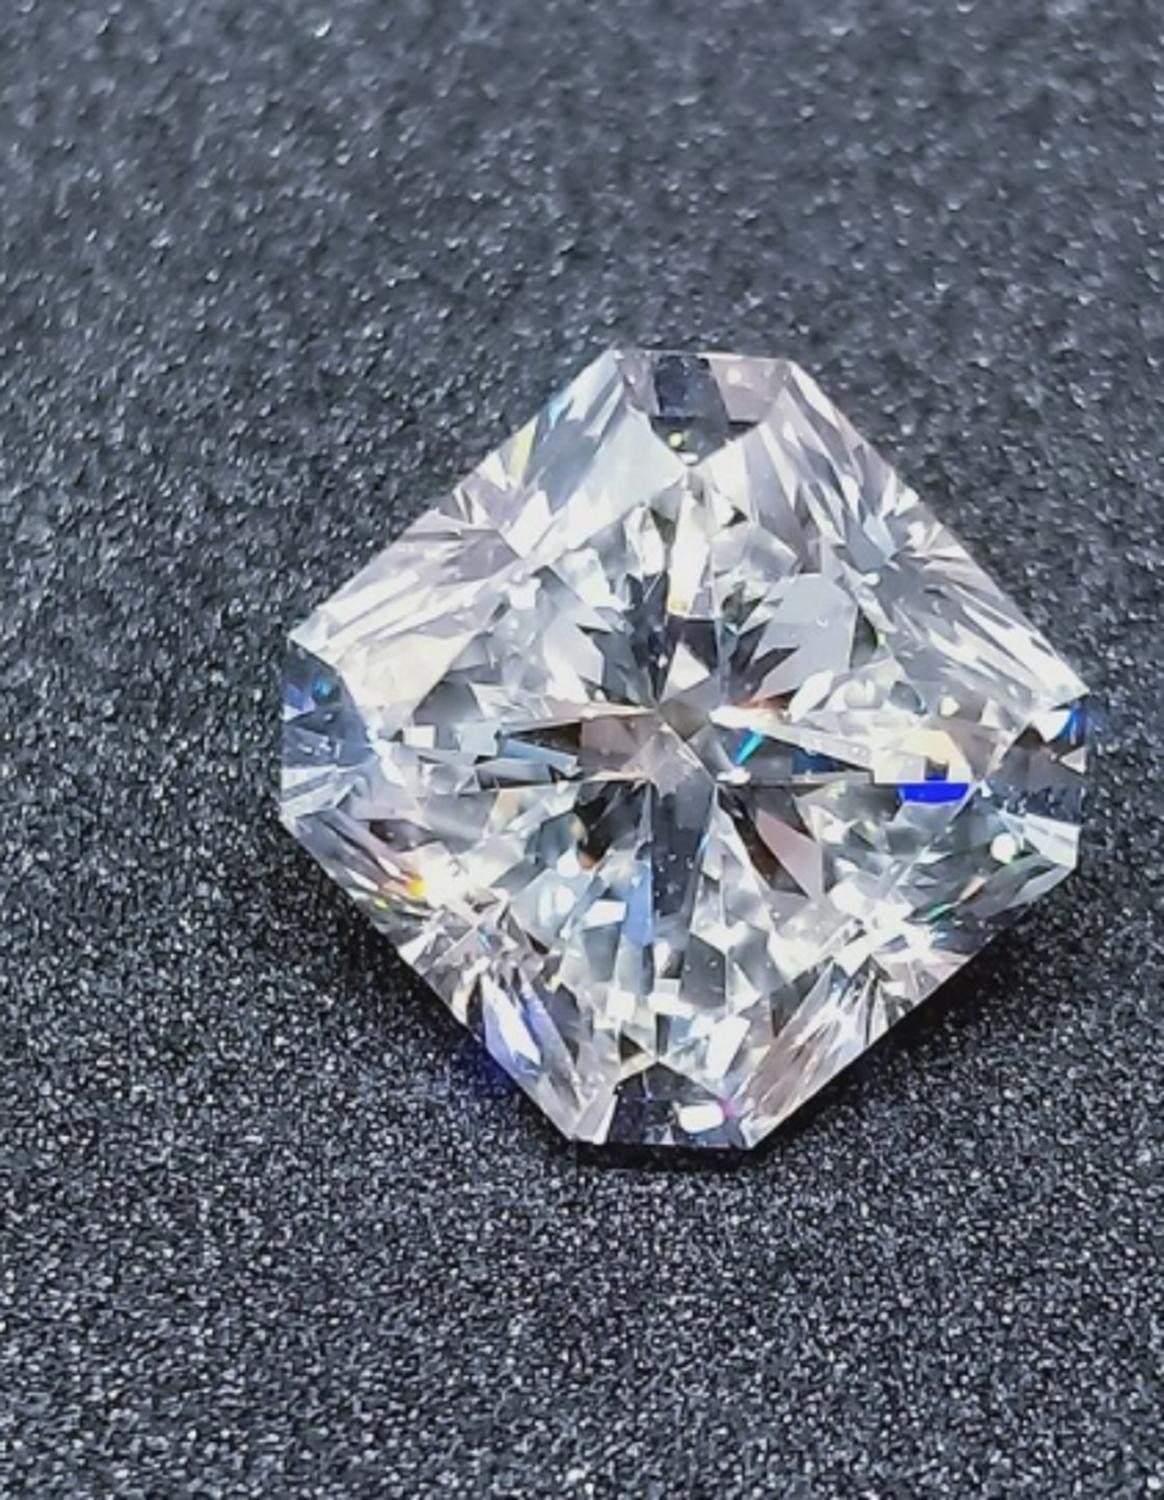 Magnifique bague avec un diamant GIA, taille radiant carré, 5 carats, couleur e et pureté vvs2 !

Une magnifique pierre d'excellence accompagnée de deux pierres latérales qui font de cette pièce une bague très élégante et moderne.
La monture est en